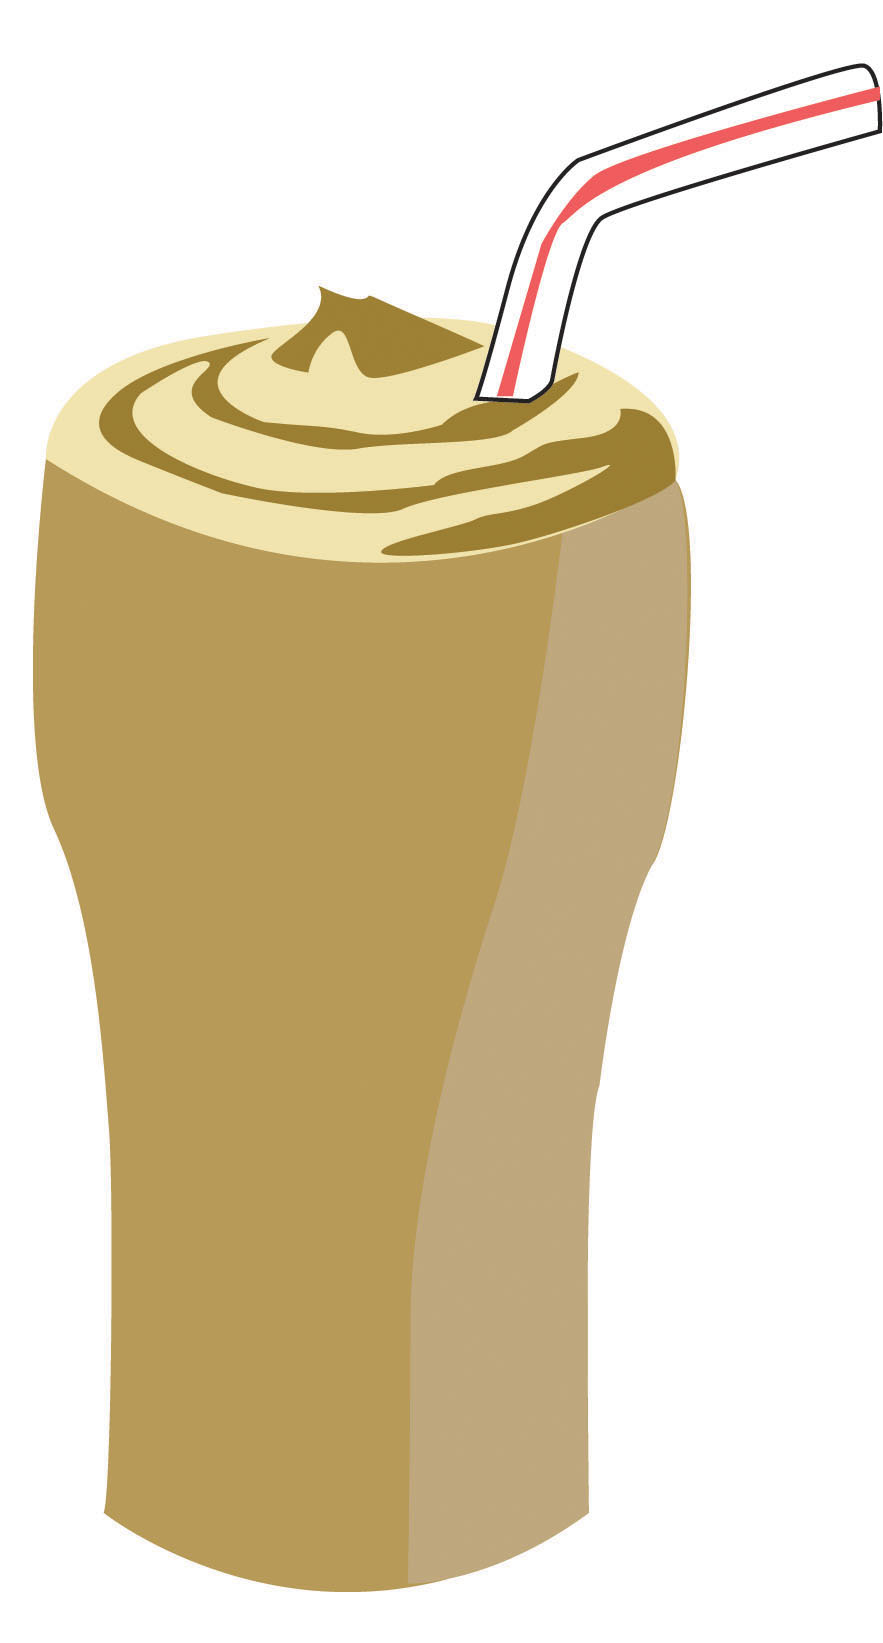 Clip art milkshake by Moonlig - Milkshake Clip Art